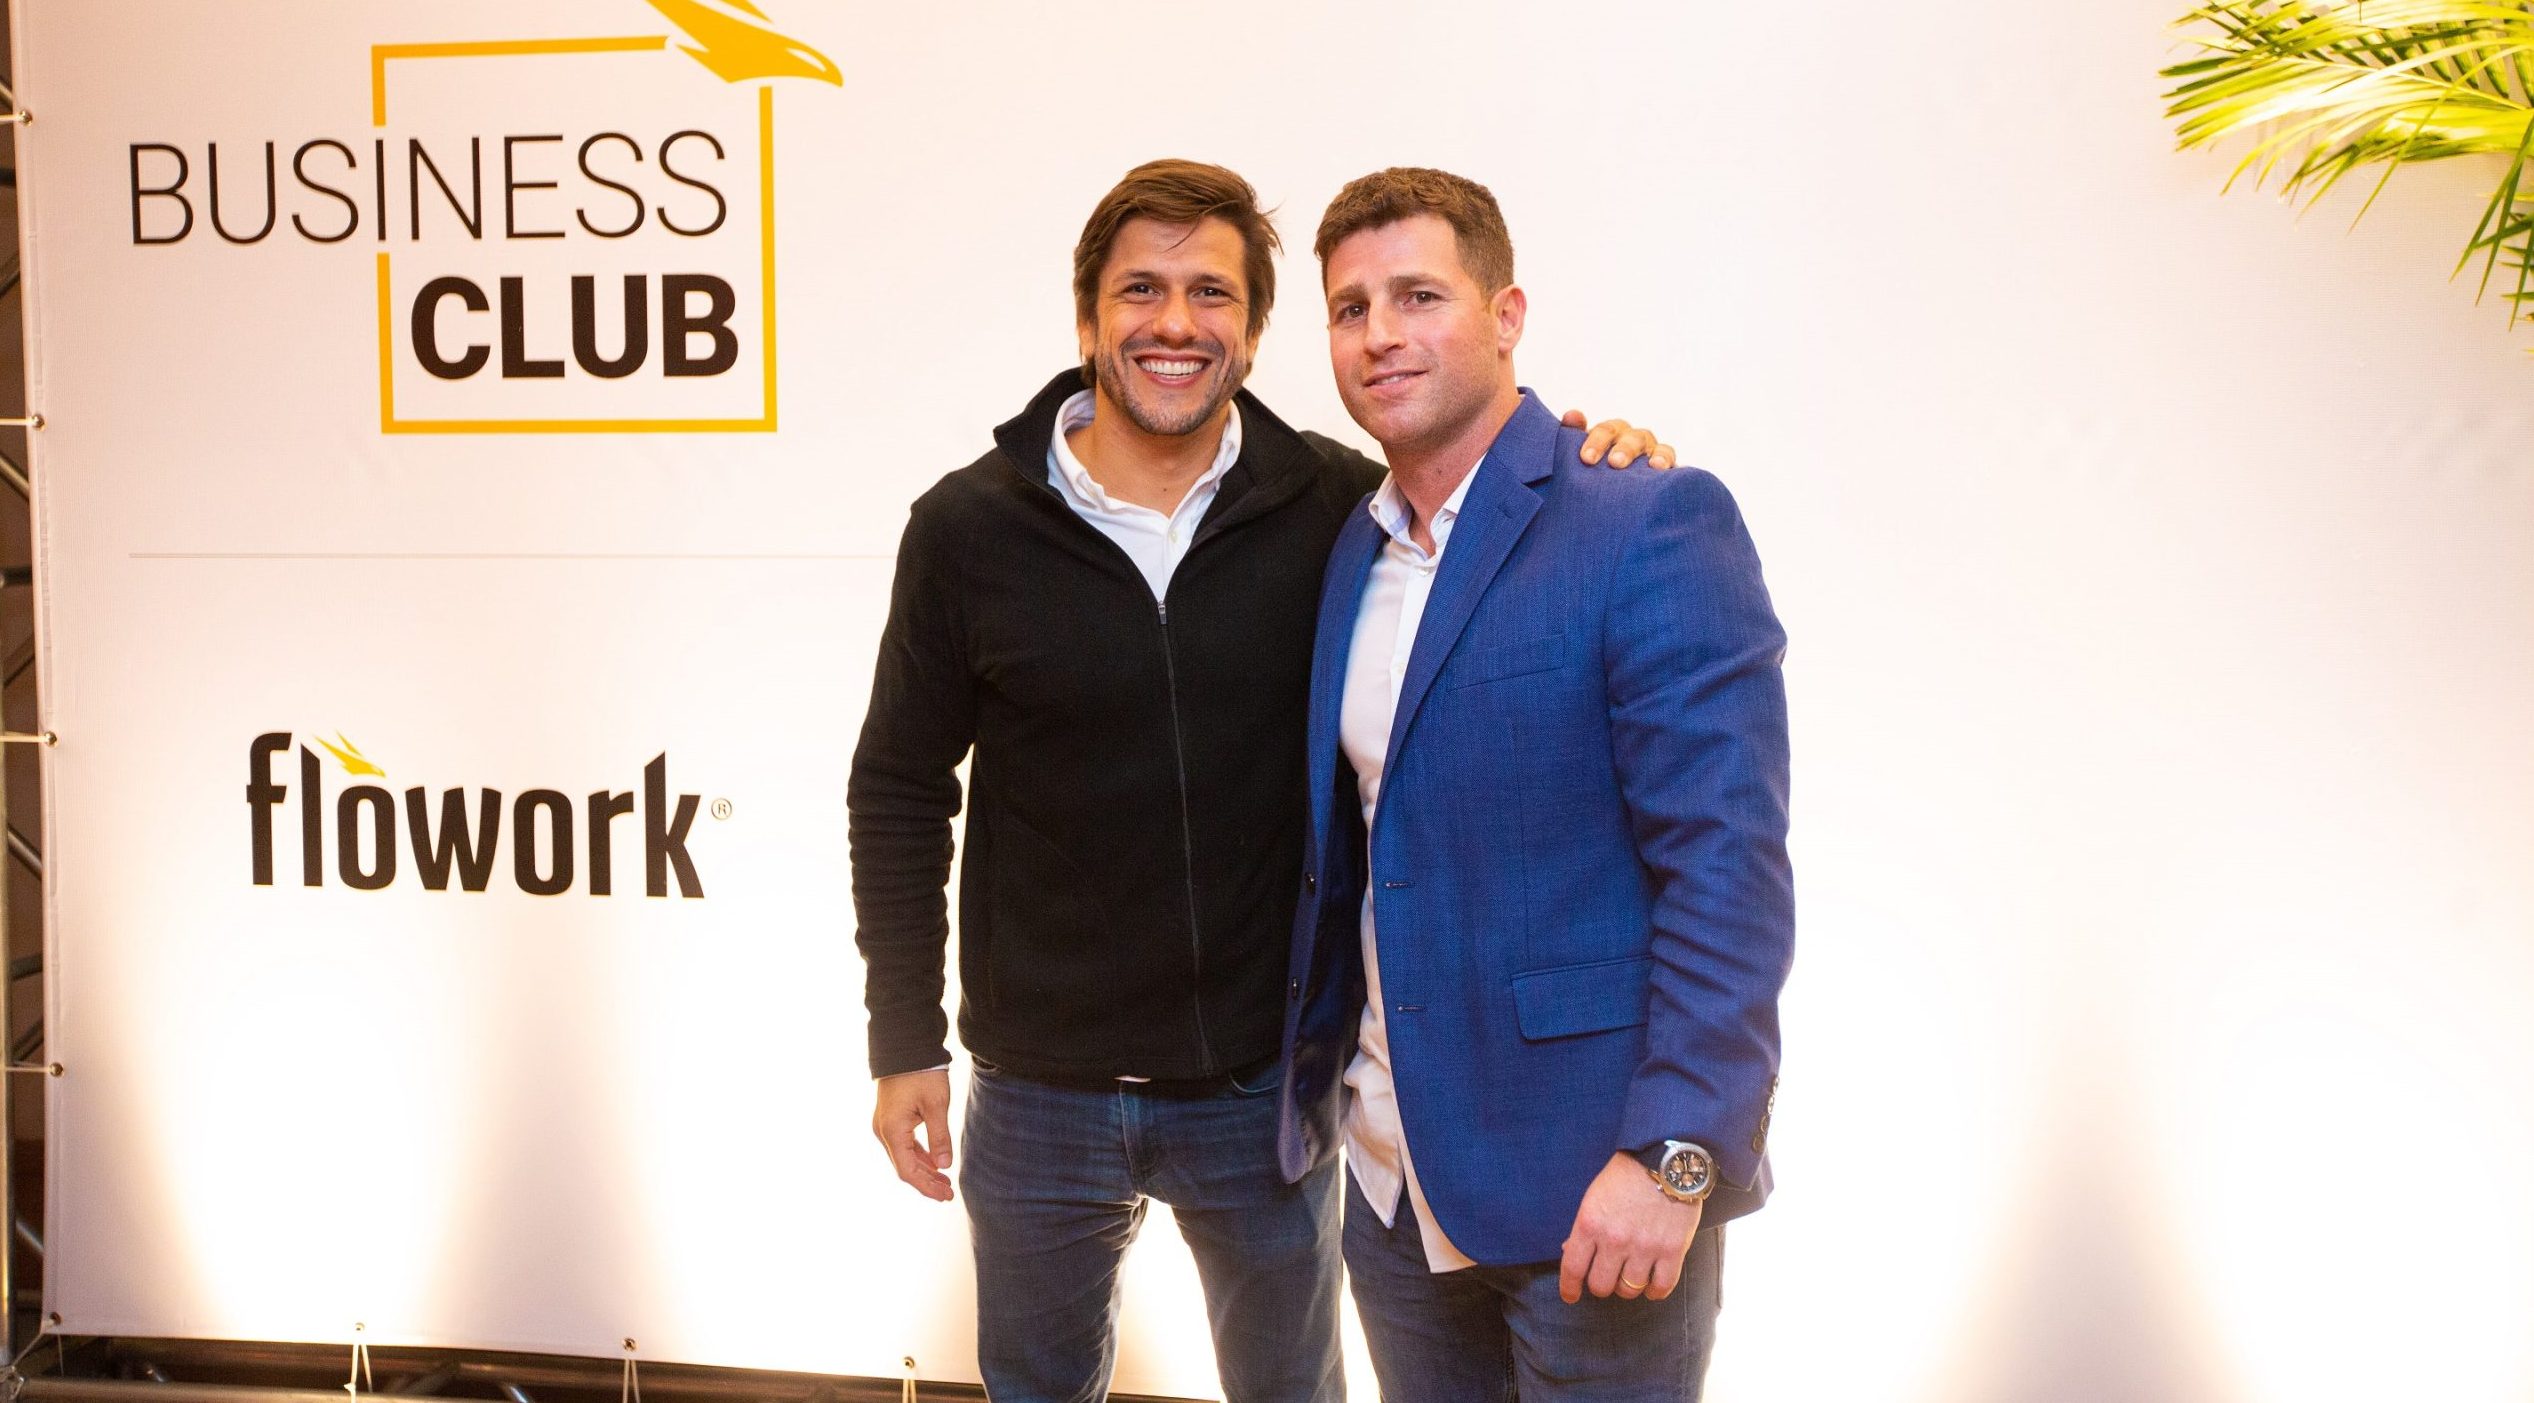 Business Club, idealizado pela Flowork, reuniu líderes e decisores